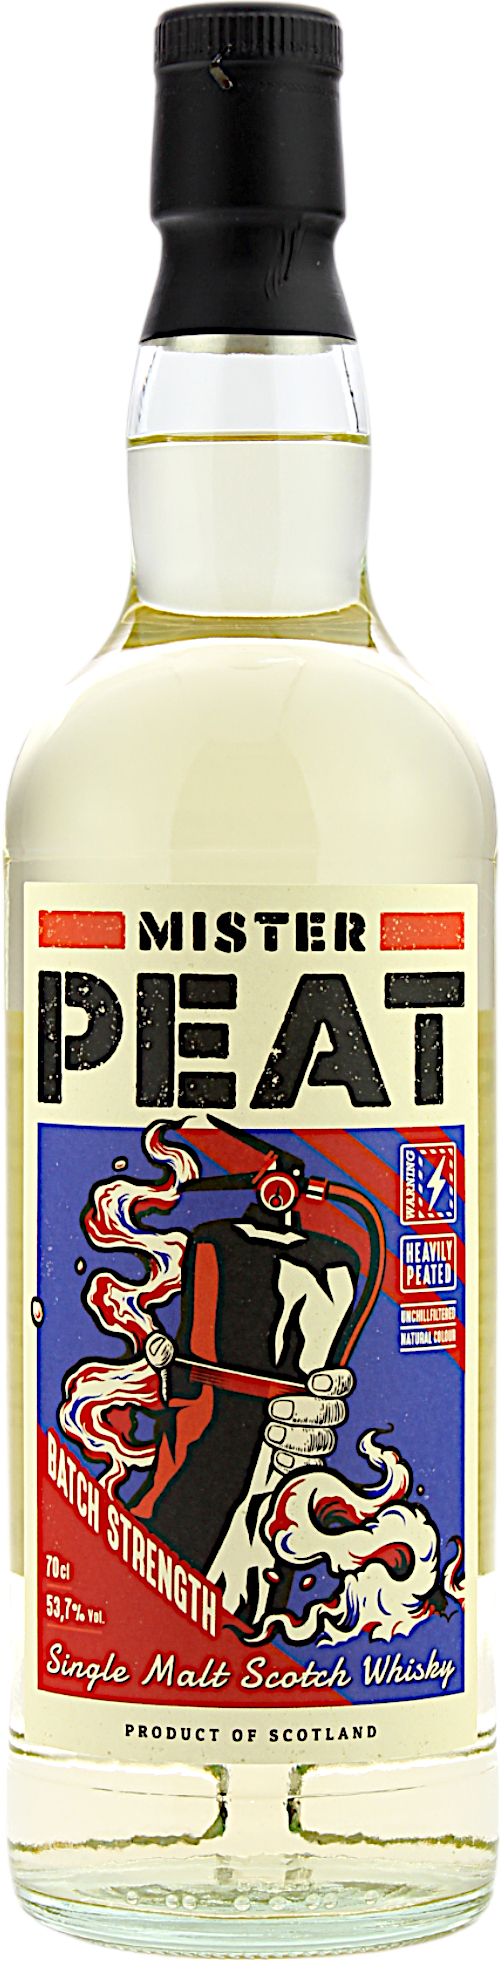 Mister Peat Batch Strength Single Malt Scotch Whisky 53.7% 0,7l